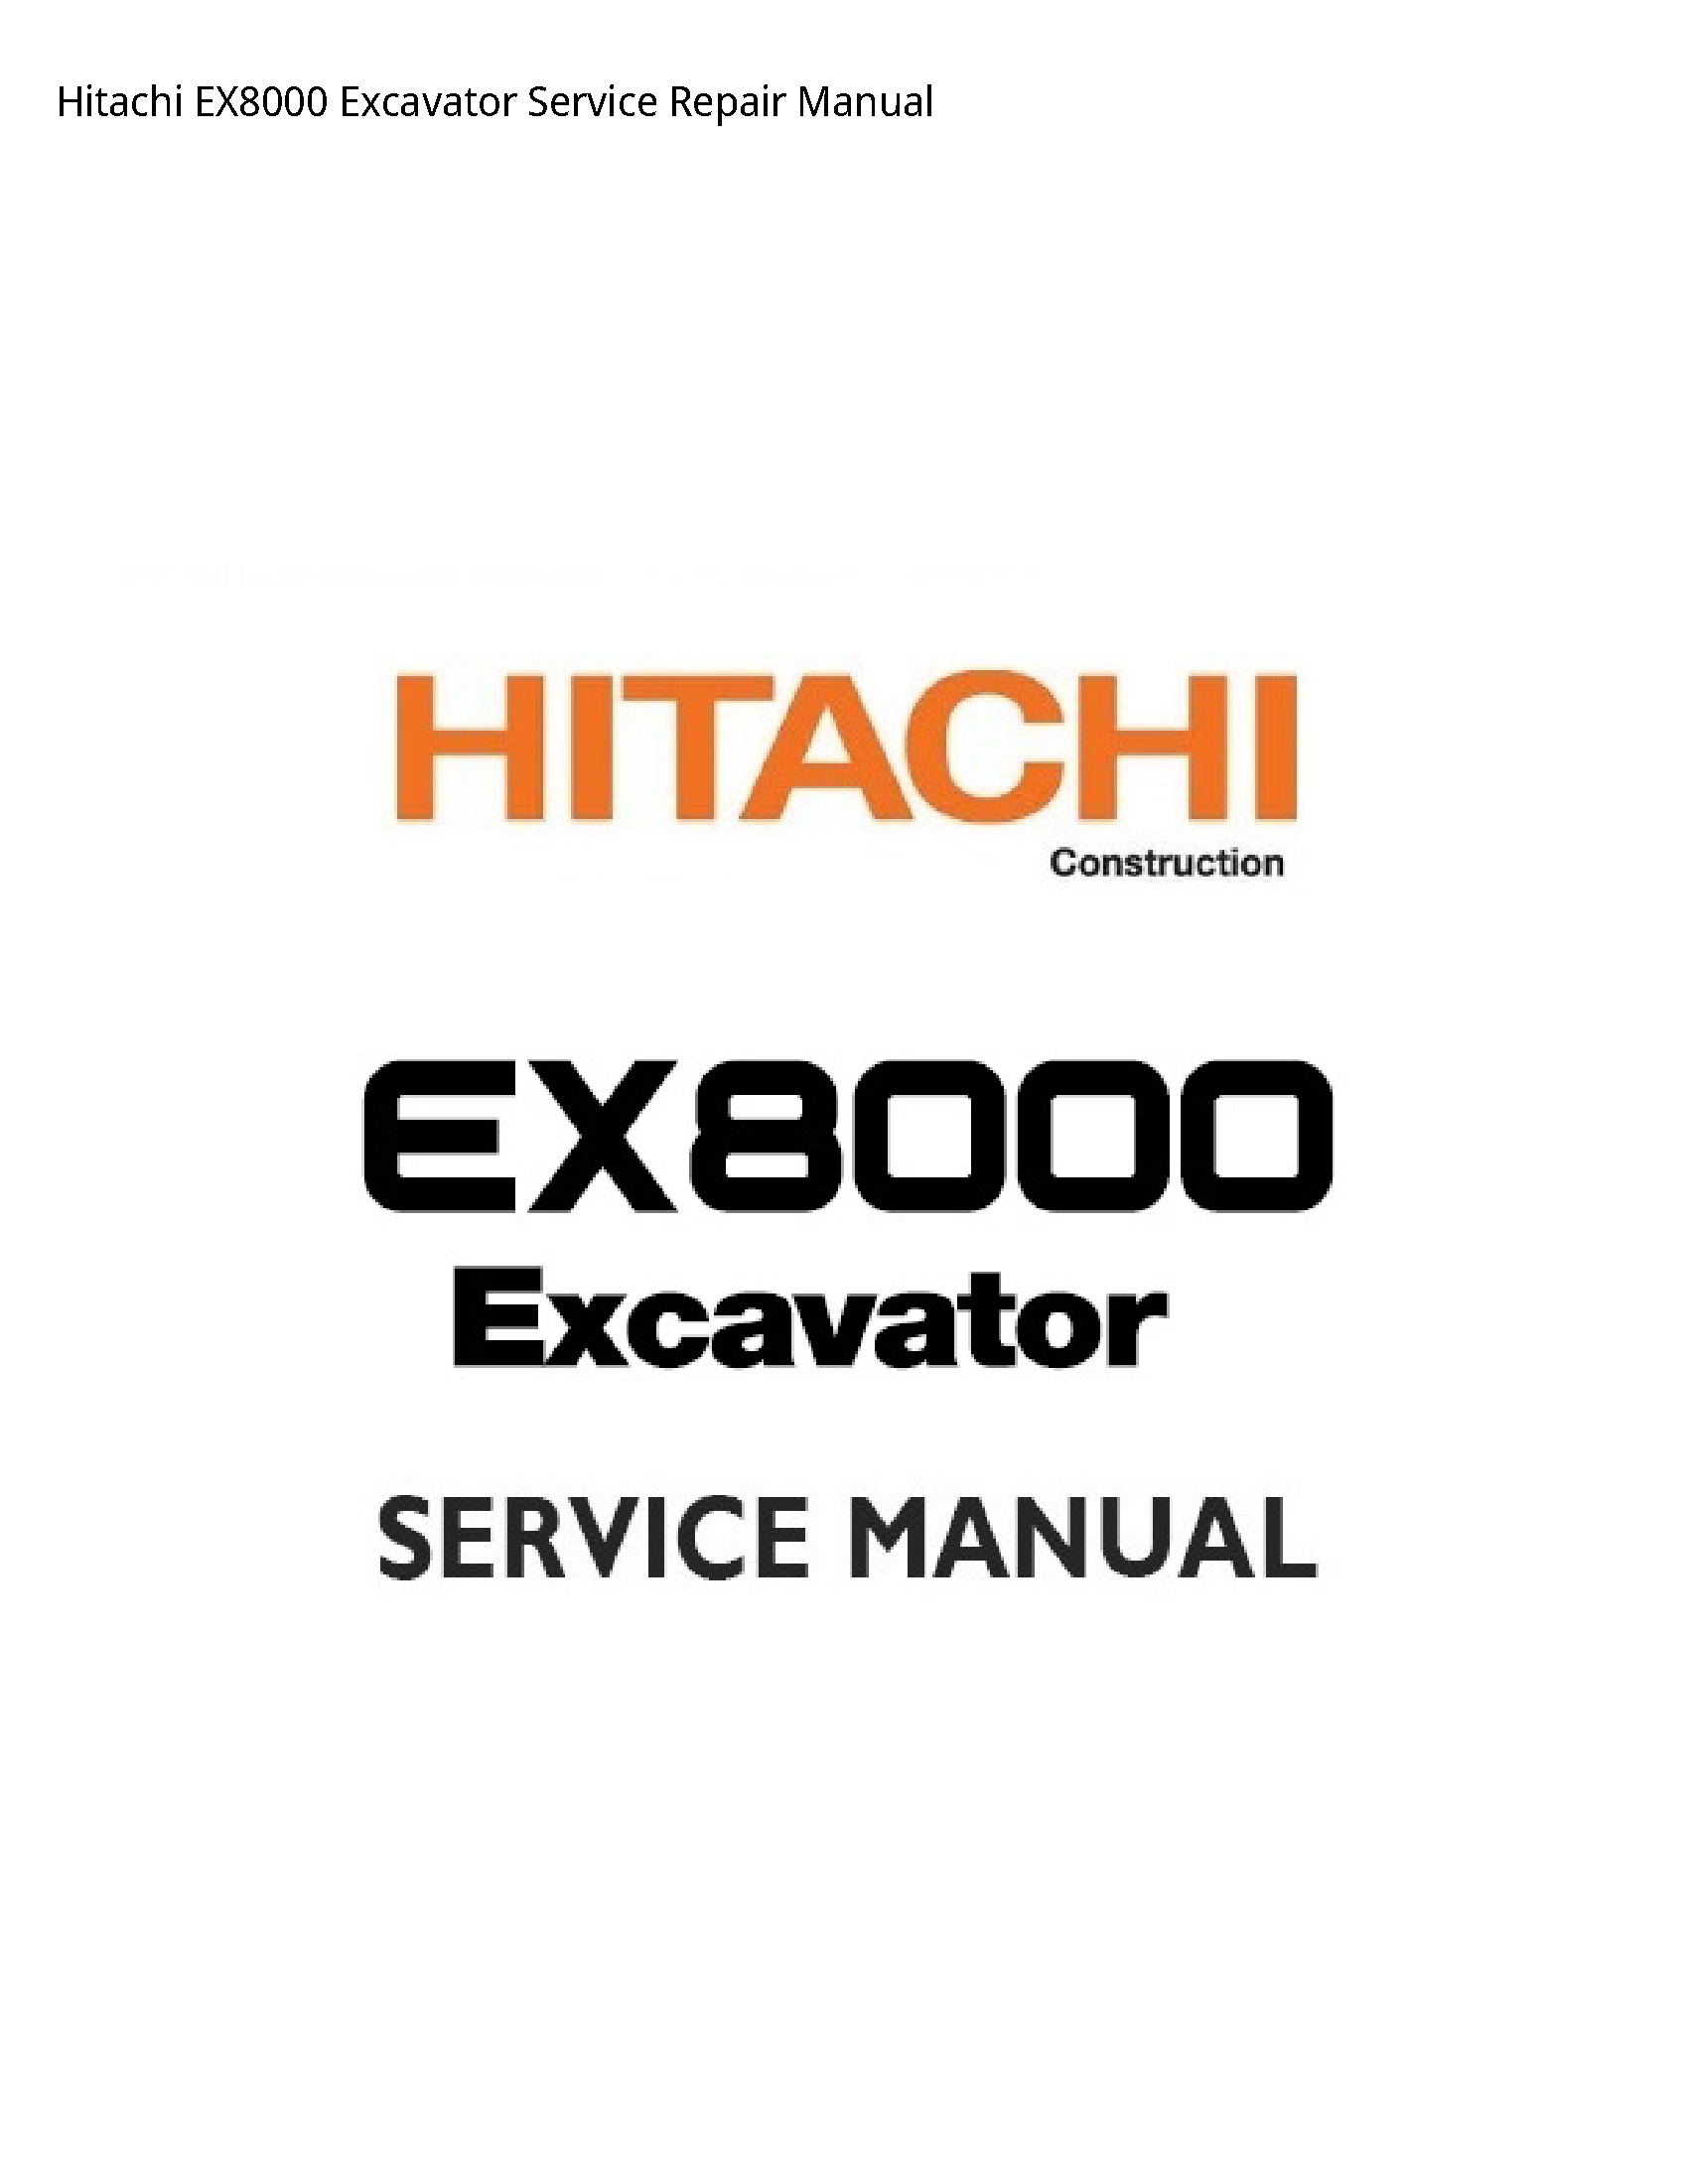 Hitachi EX8000 Excavator manual